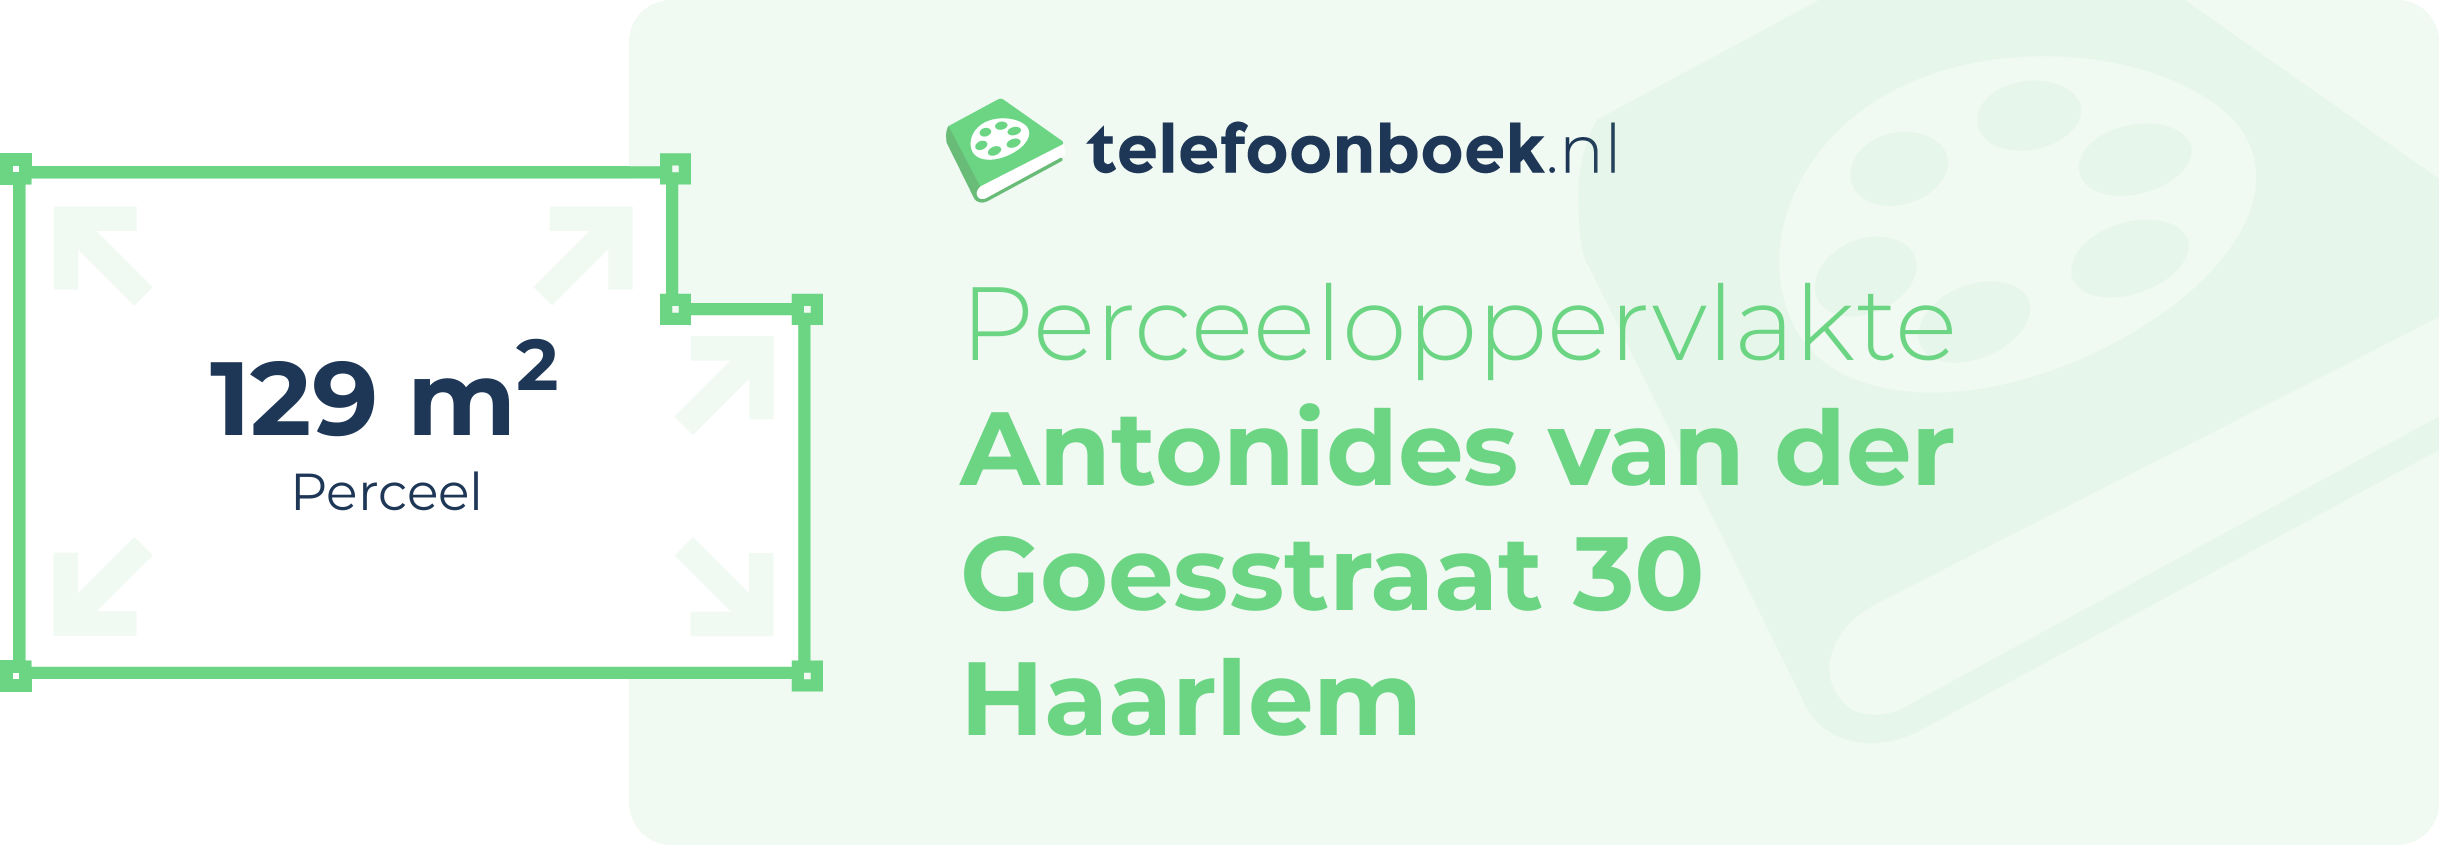 Perceeloppervlakte Antonides Van Der Goesstraat 30 Haarlem